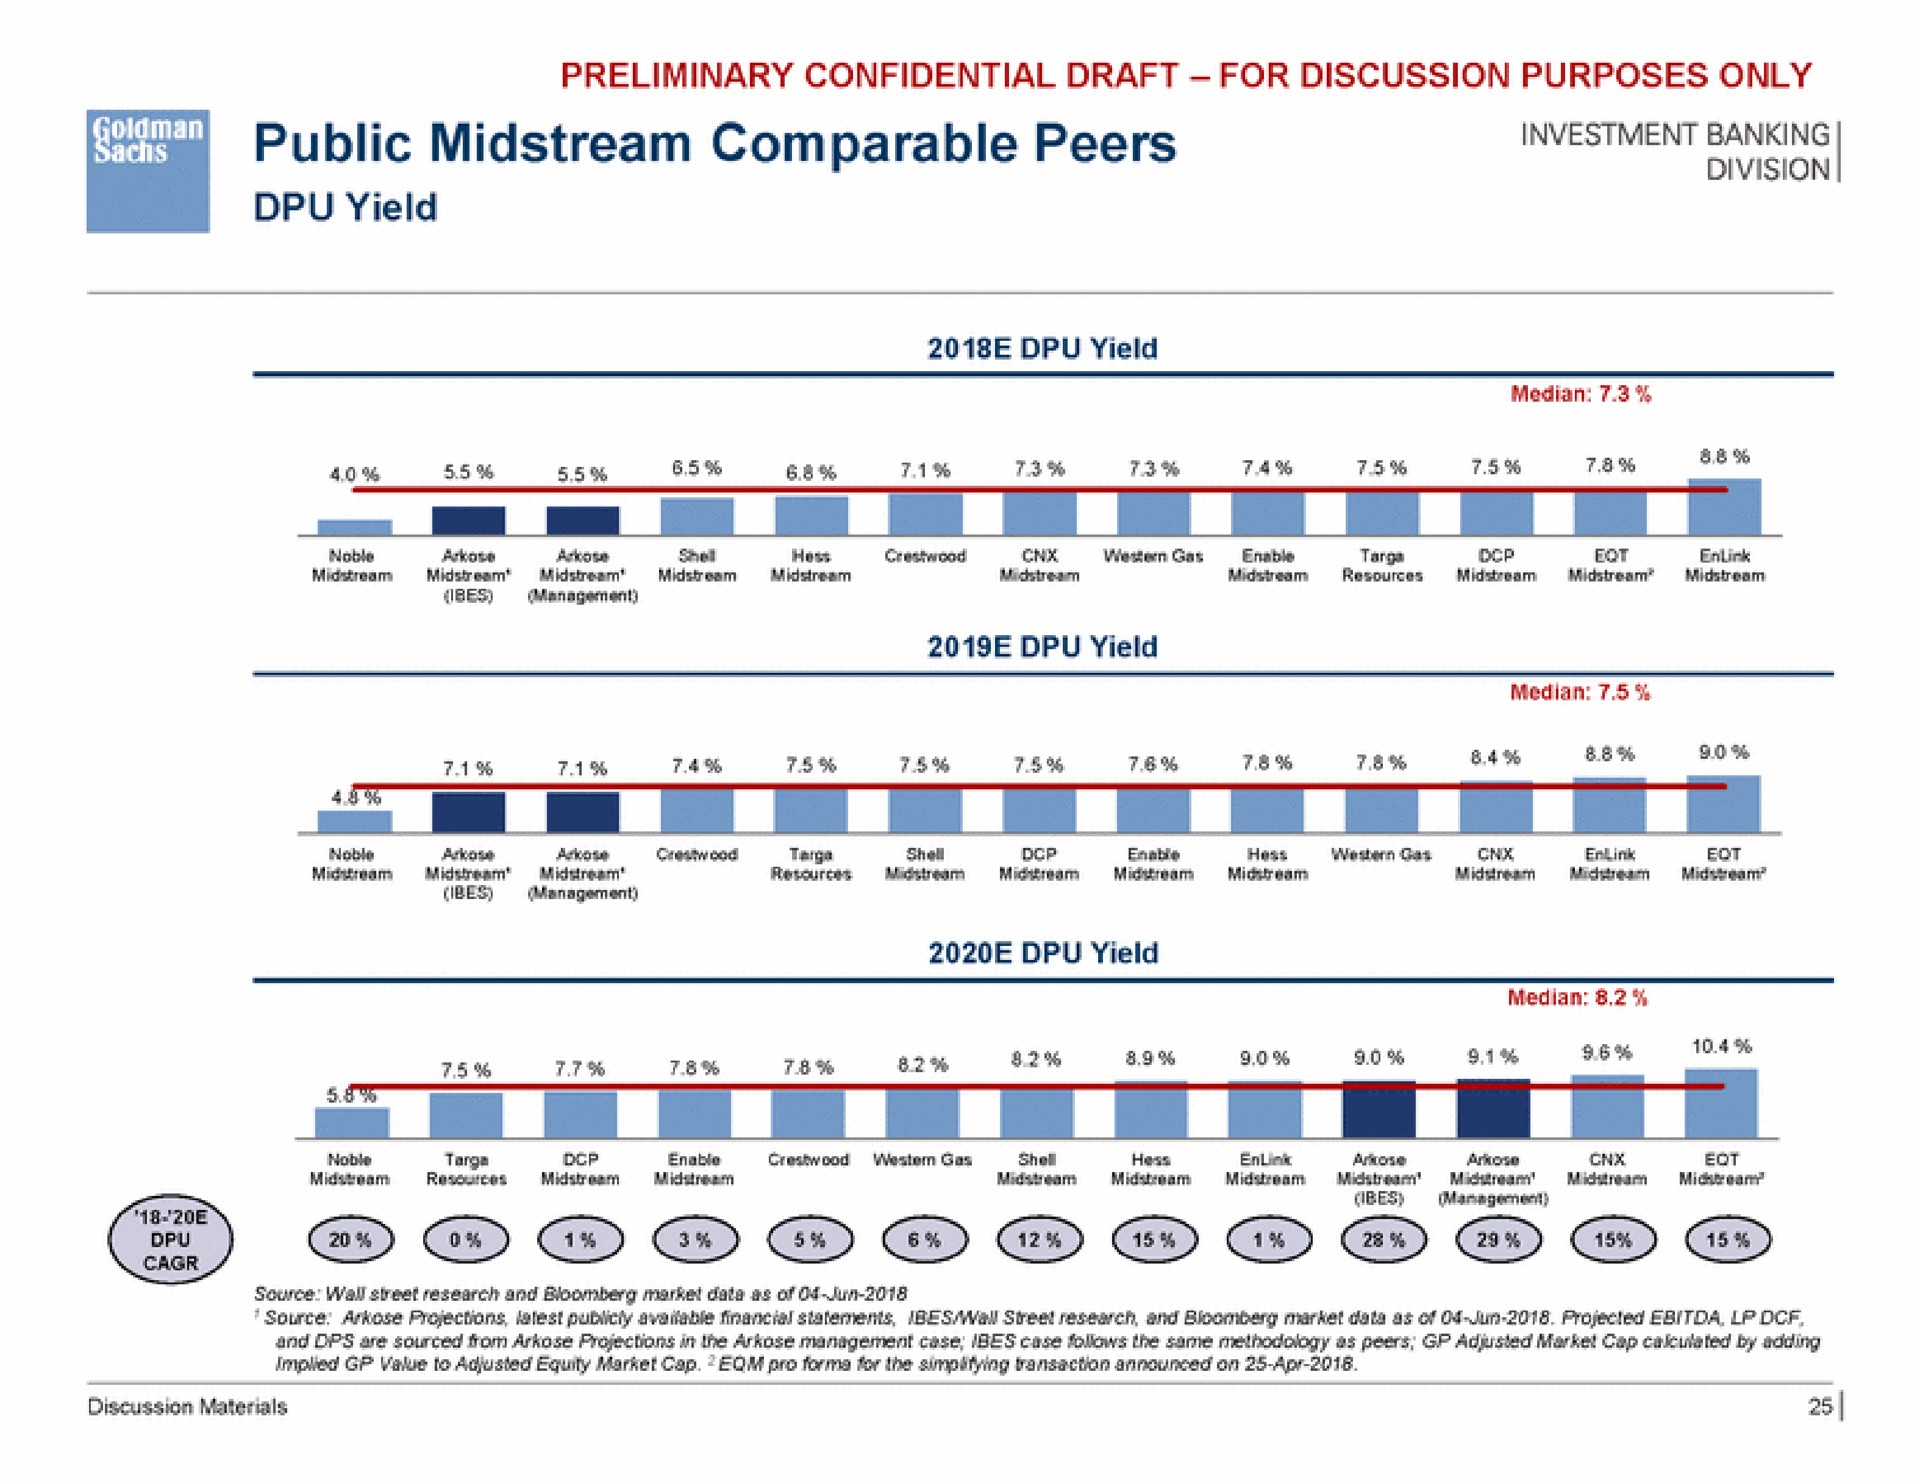 public midstream comparable peers tis rat a | Goldman Sachs